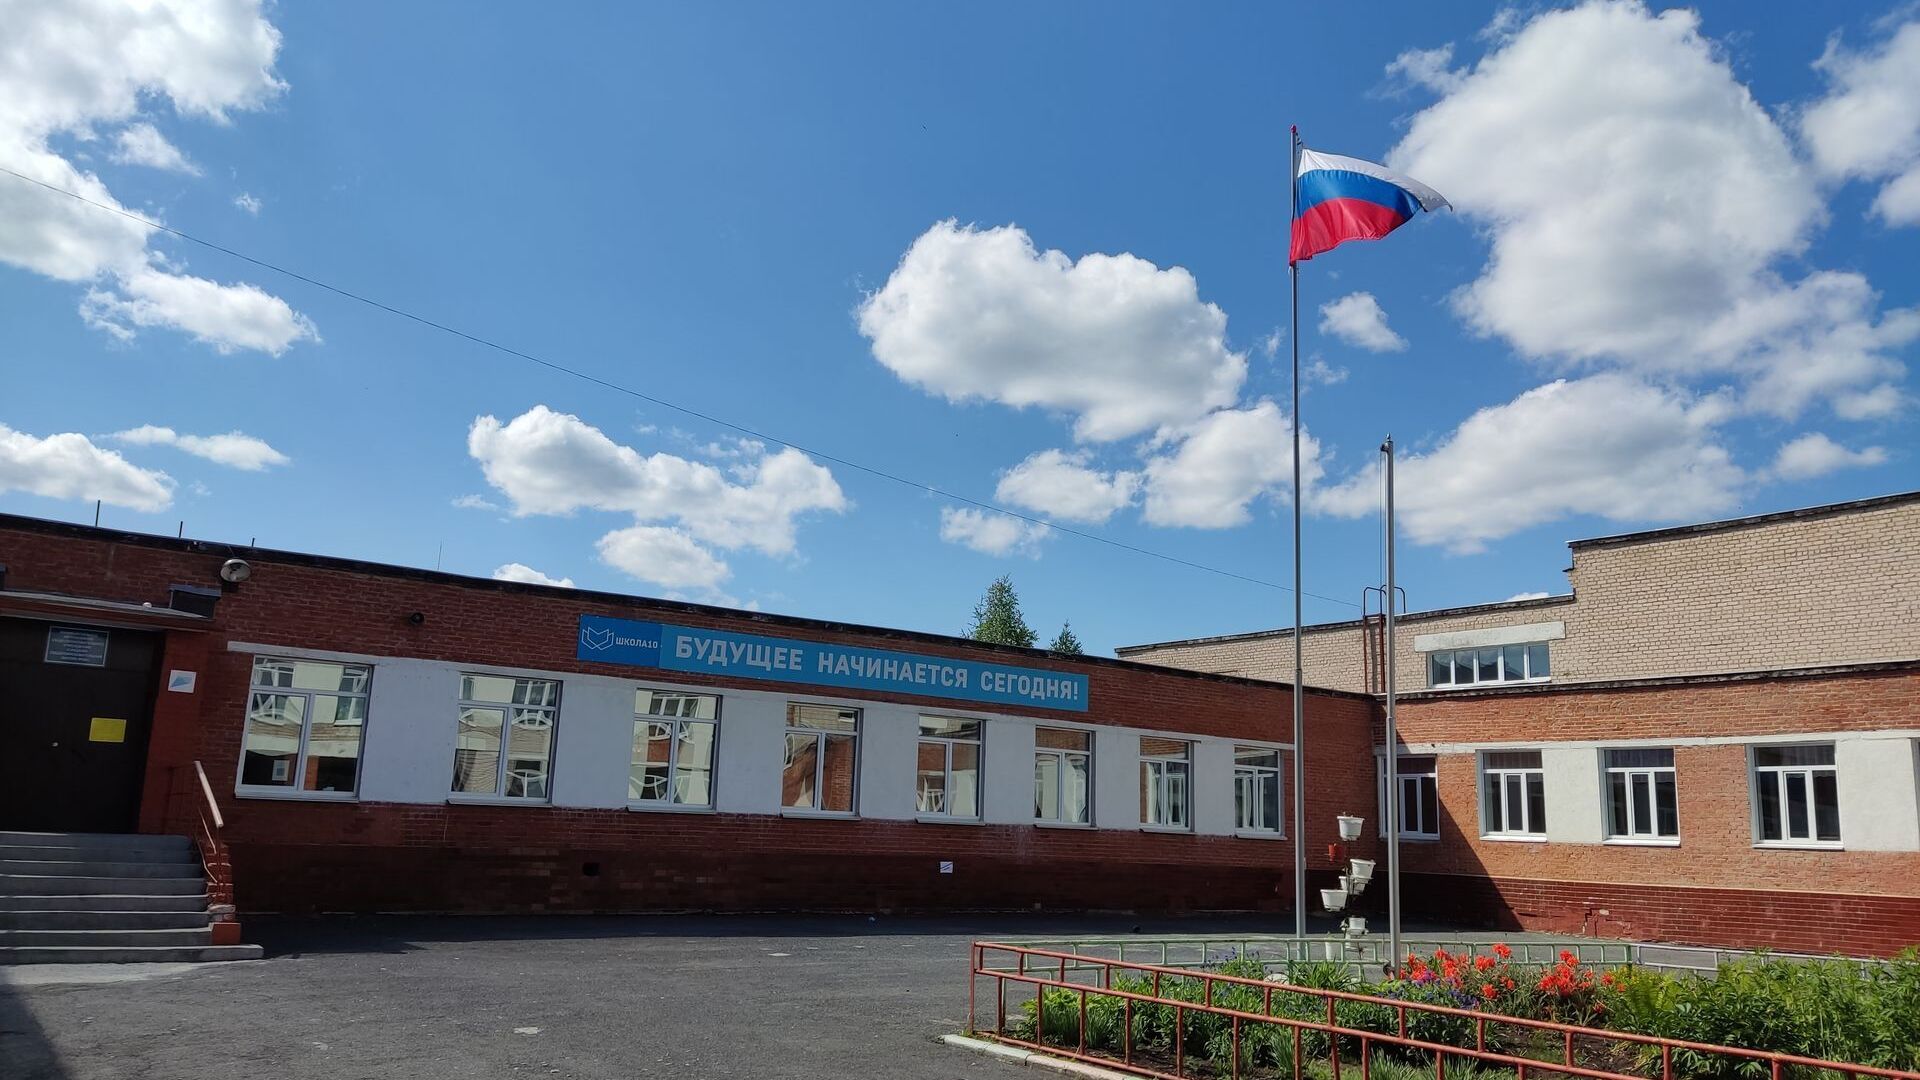 Над школой гордо реет флаг России!